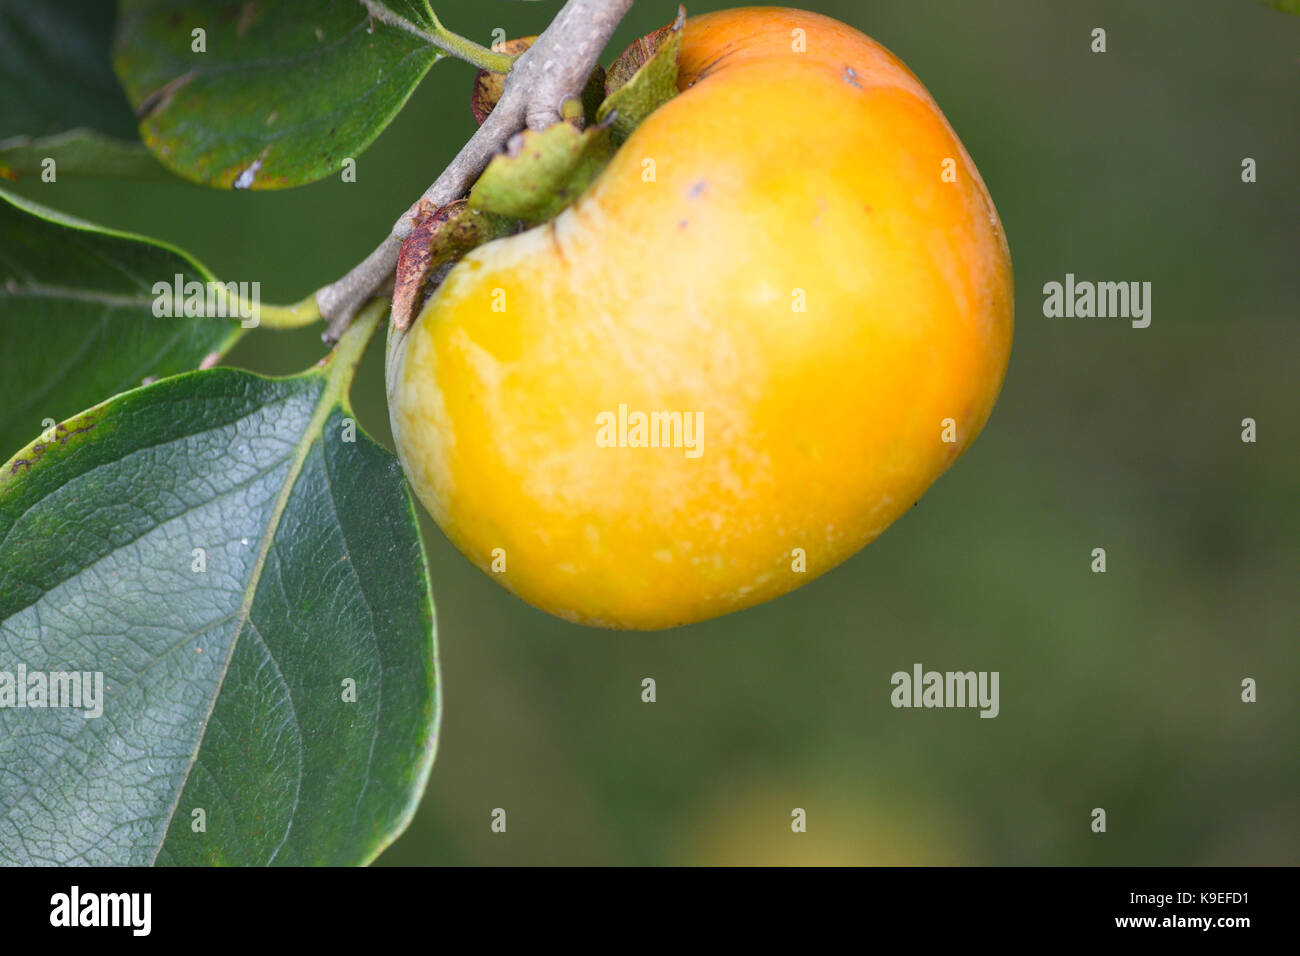 Persimmon fruit on tree Stock Photo